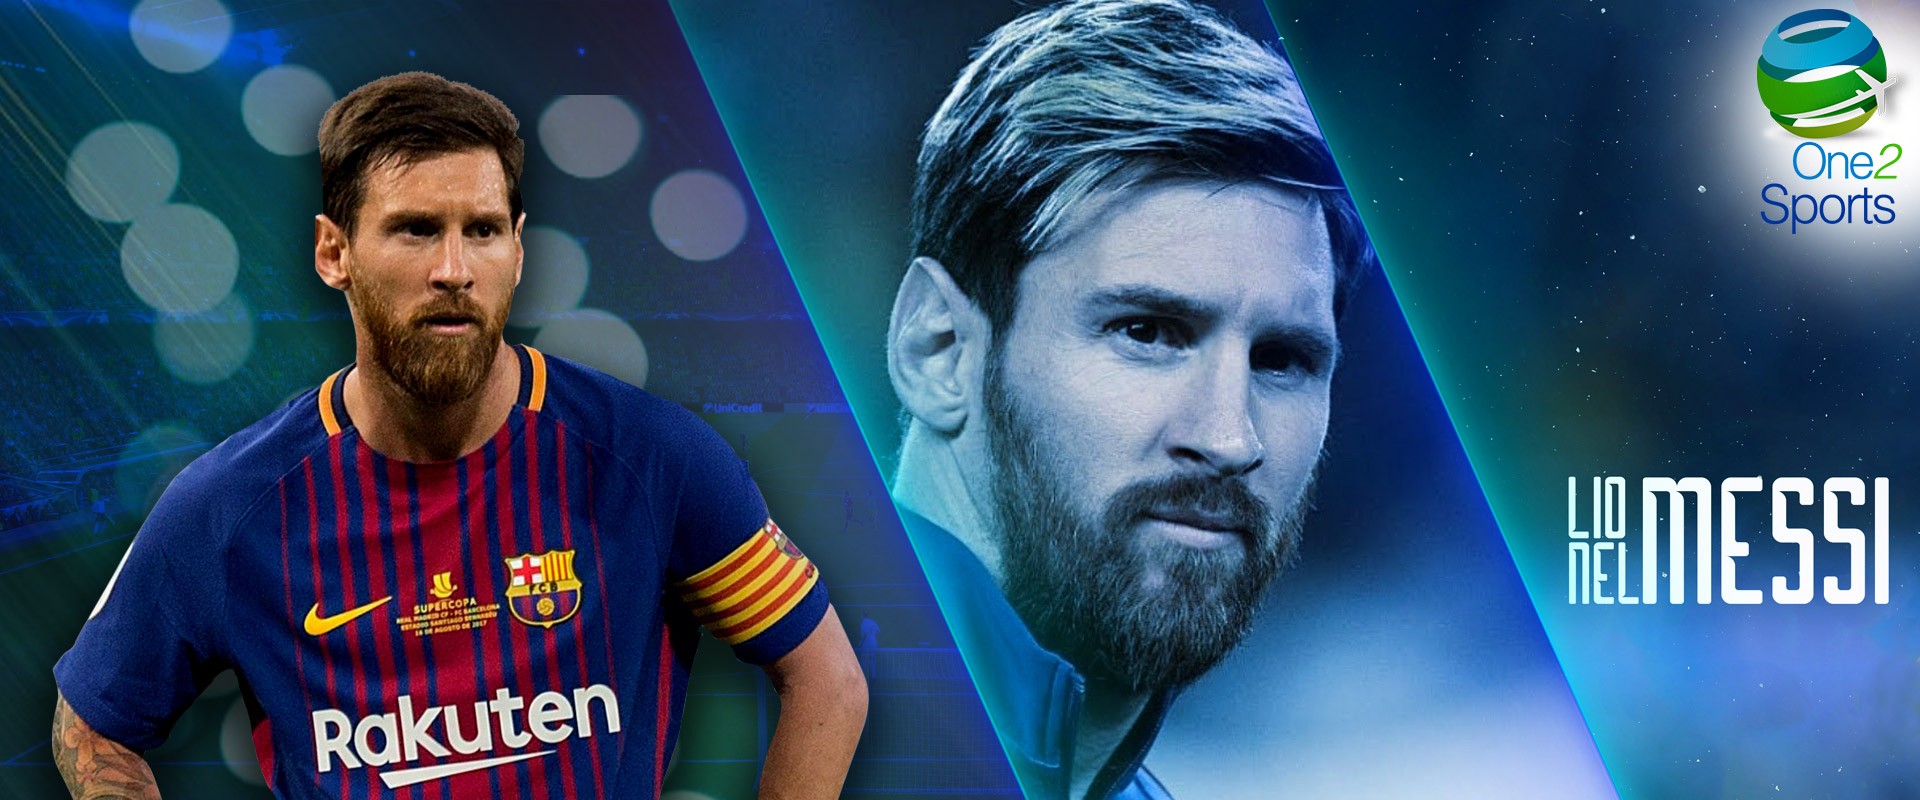 Por qué Lionel Messi es el mejor futbolista del mundo Noticias One2